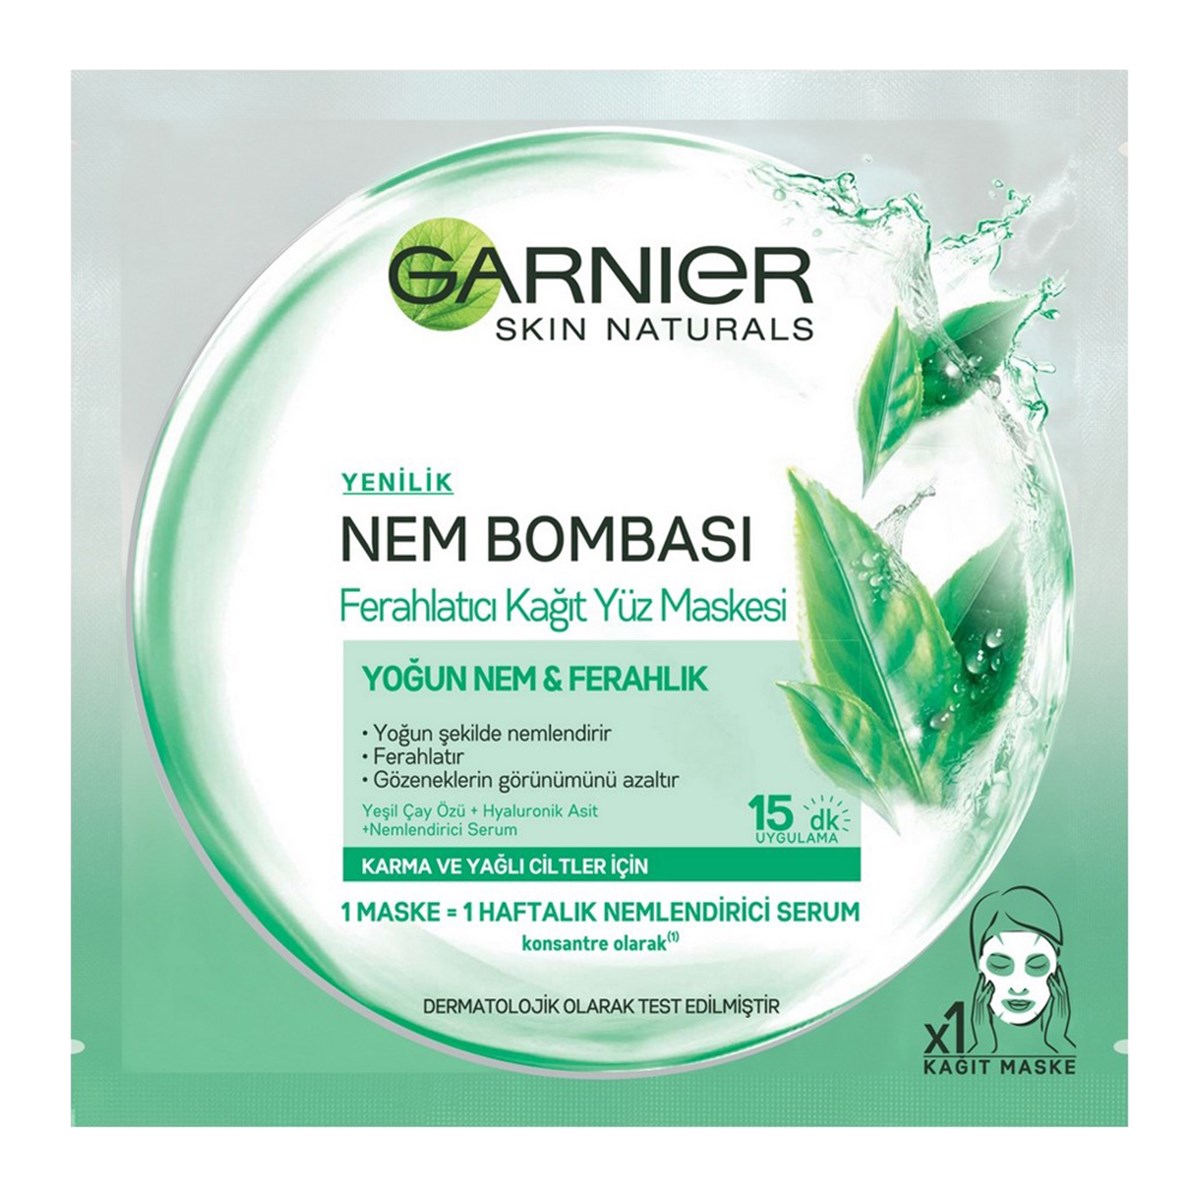 Garnier Nem Bombası Ferahlatıcı Kağıt Yüz Maskesi / Karma ve Yağlı Ciltler  - Platin